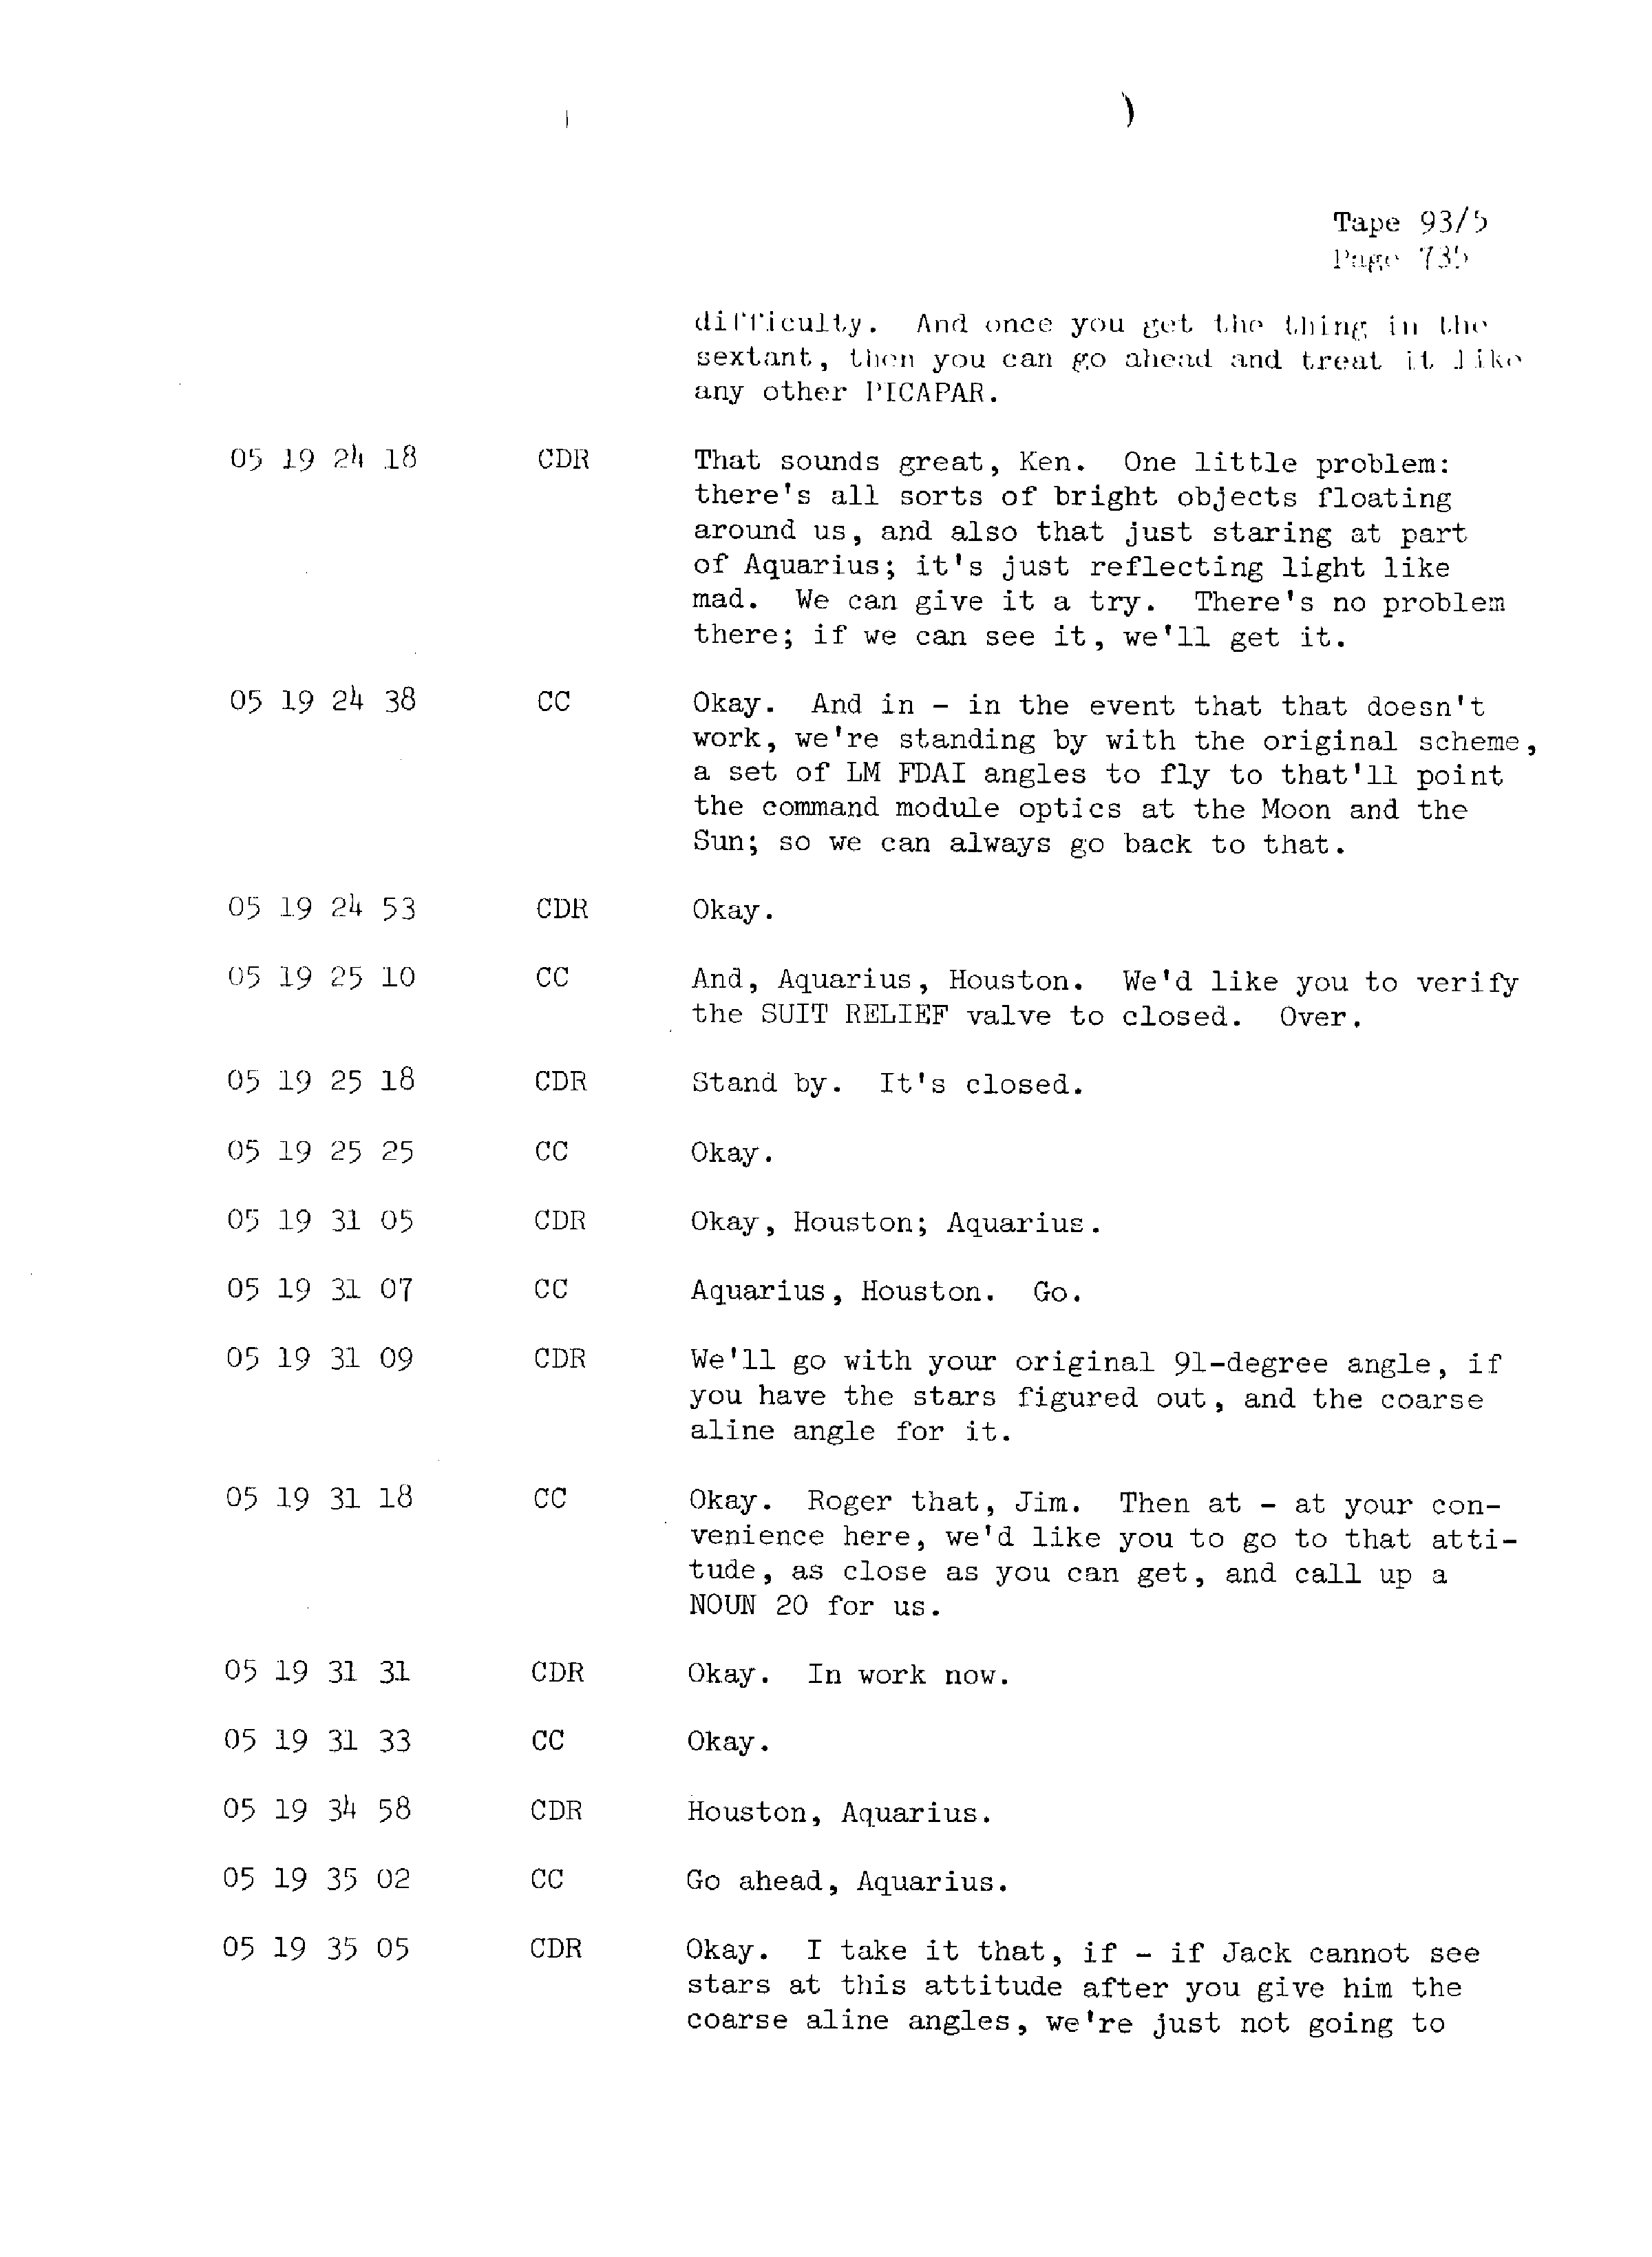 Page 742 of Apollo 13’s original transcript